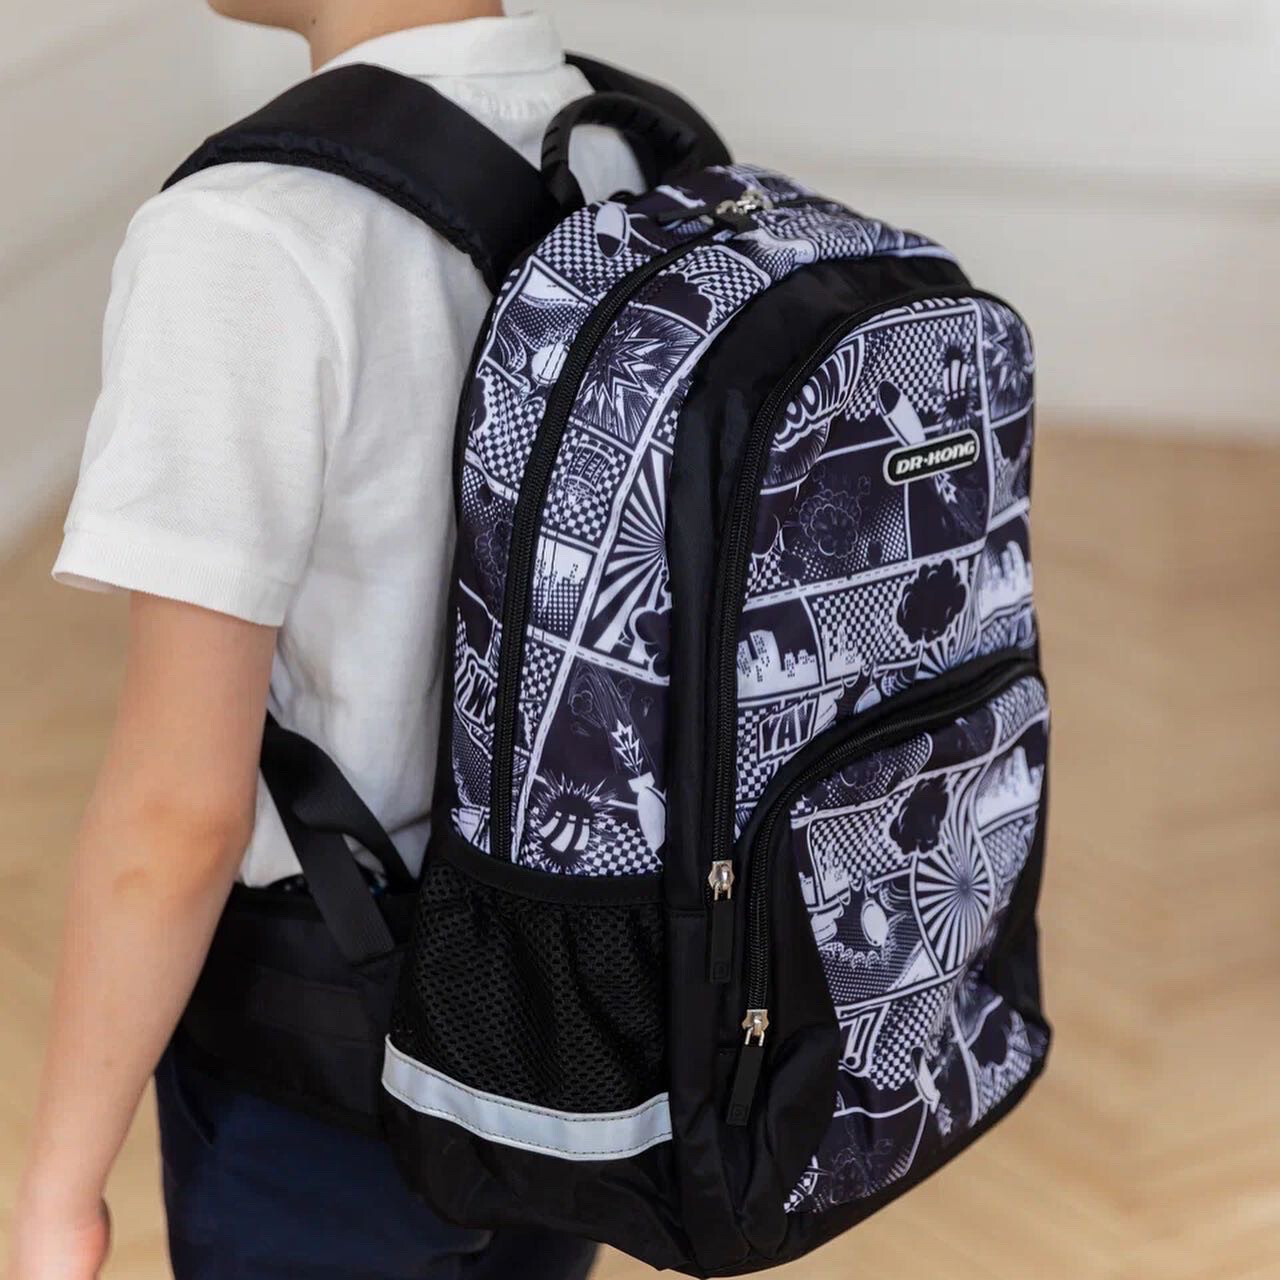 Школьный рюкзак DR.KONG Z 1234 для мальчиков на рост 130-150 см